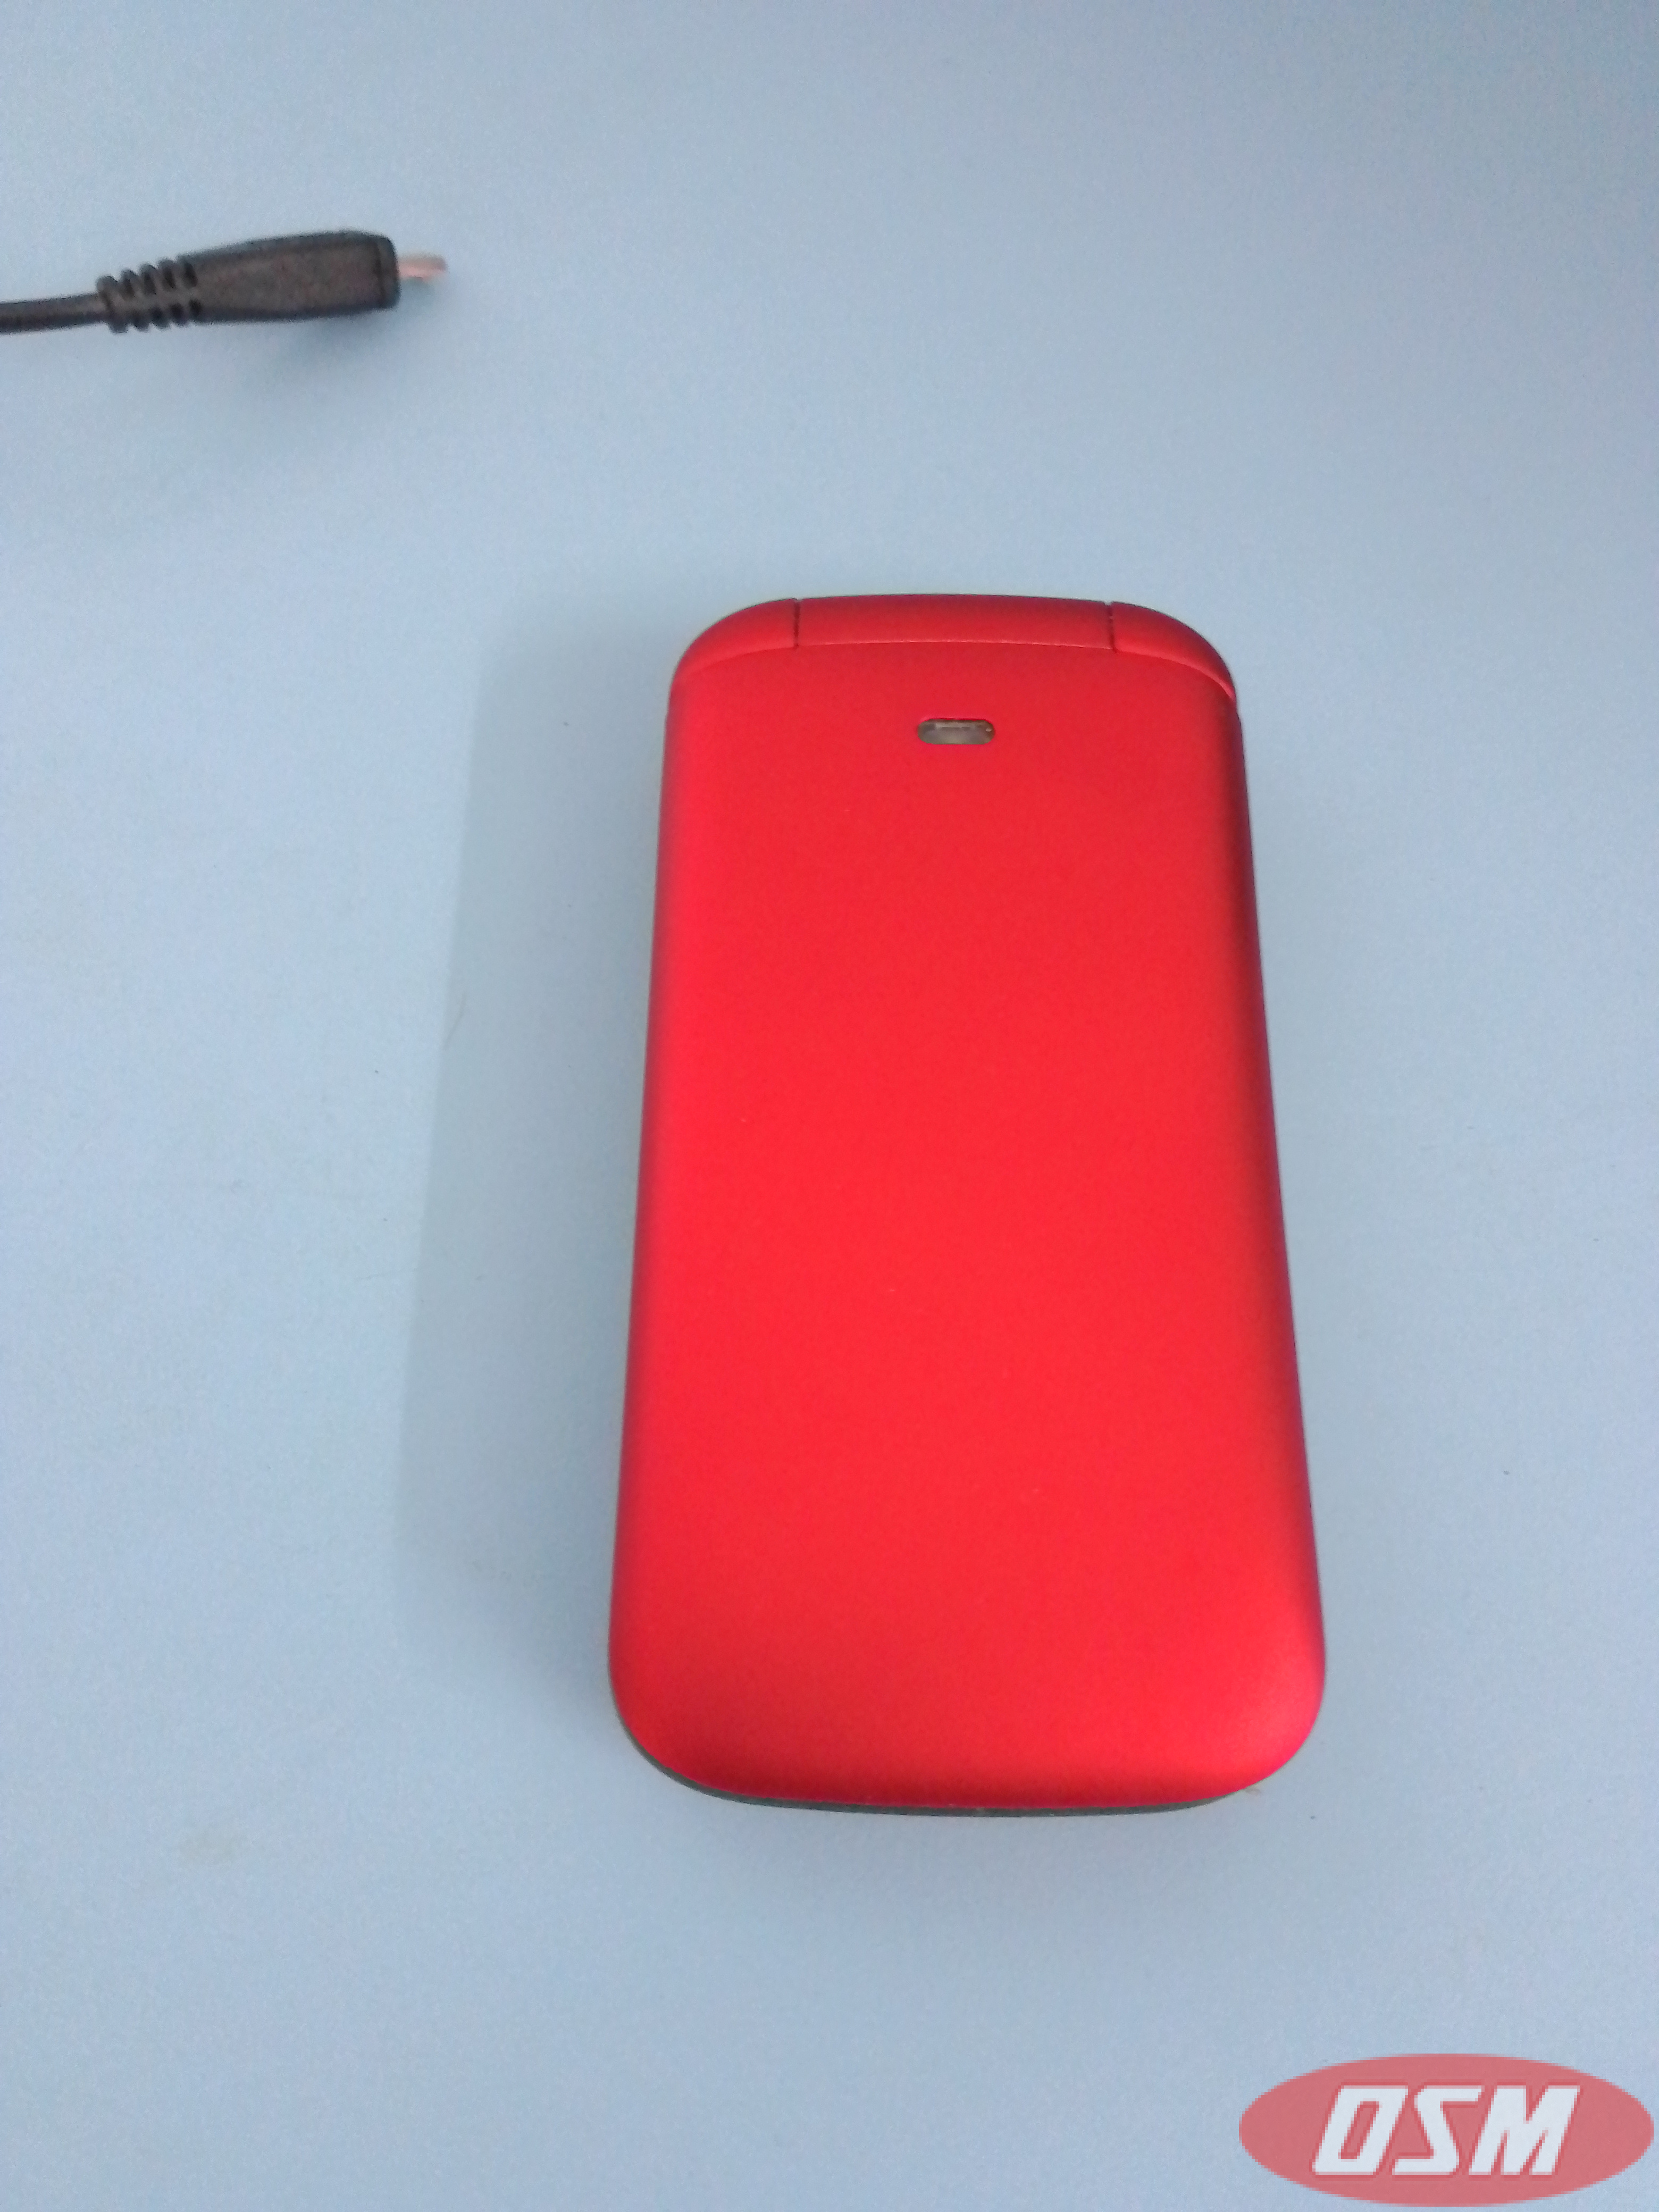 Lava Red Flip Phone